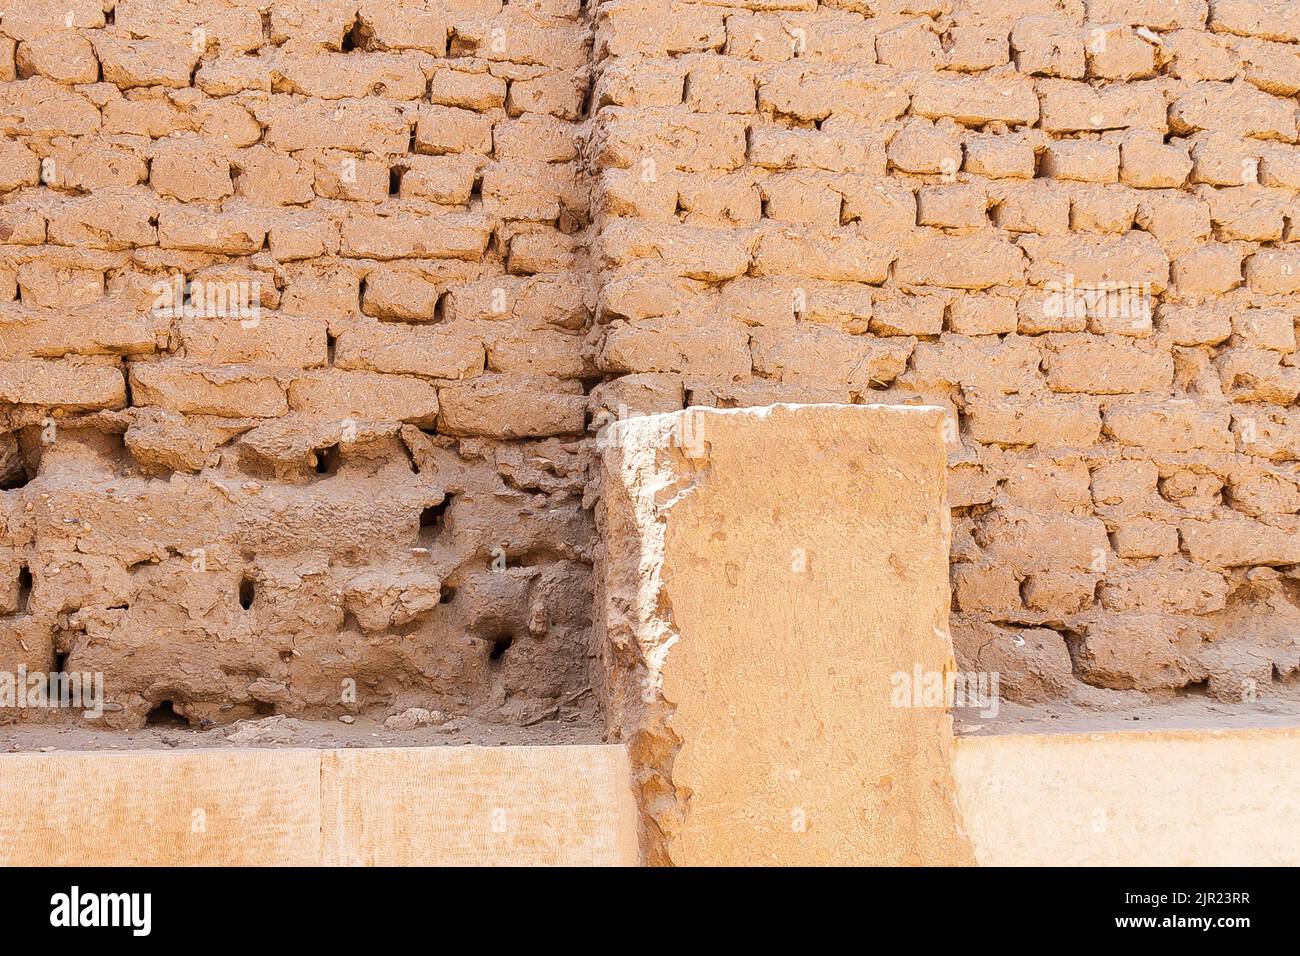 Égypte, Saqqara, tombe de Horemheb, mur sud de la deuxième cour, reste d'un mur de phase précédente, démantelé dans la dernière étape de construction. Banque D'Images